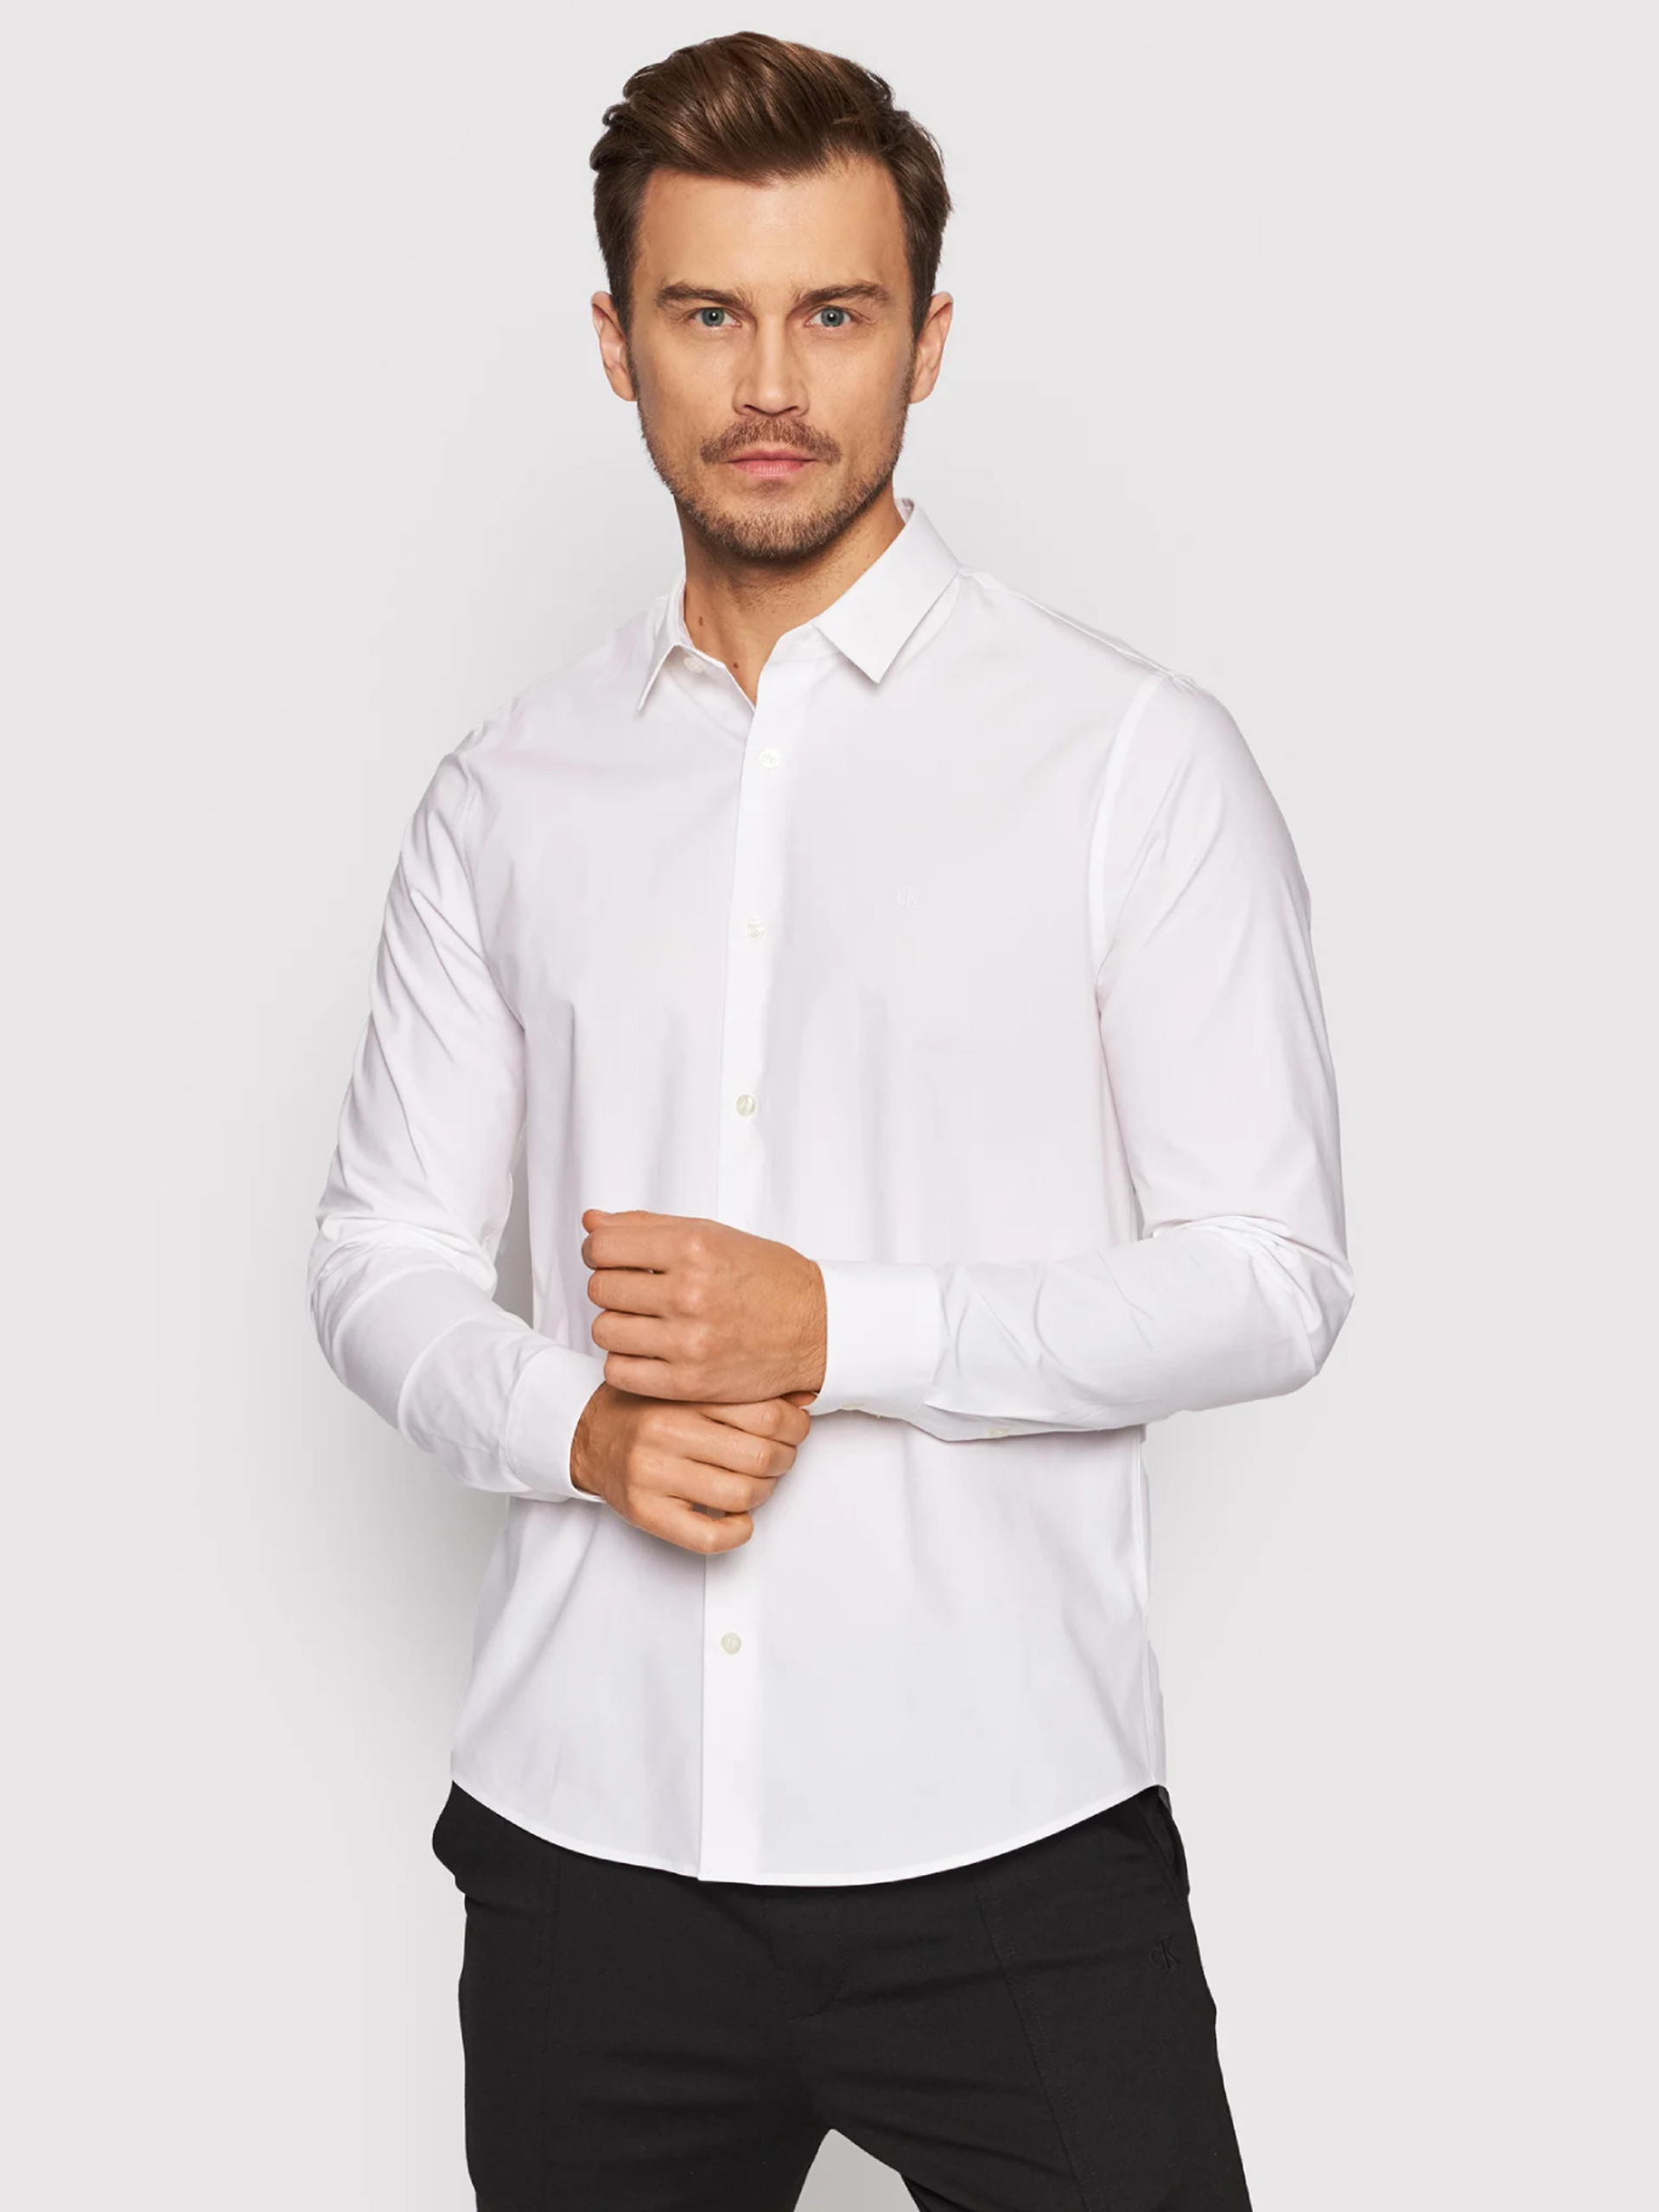 Calvin Klein pánská bílá košile - XXL (YAF)